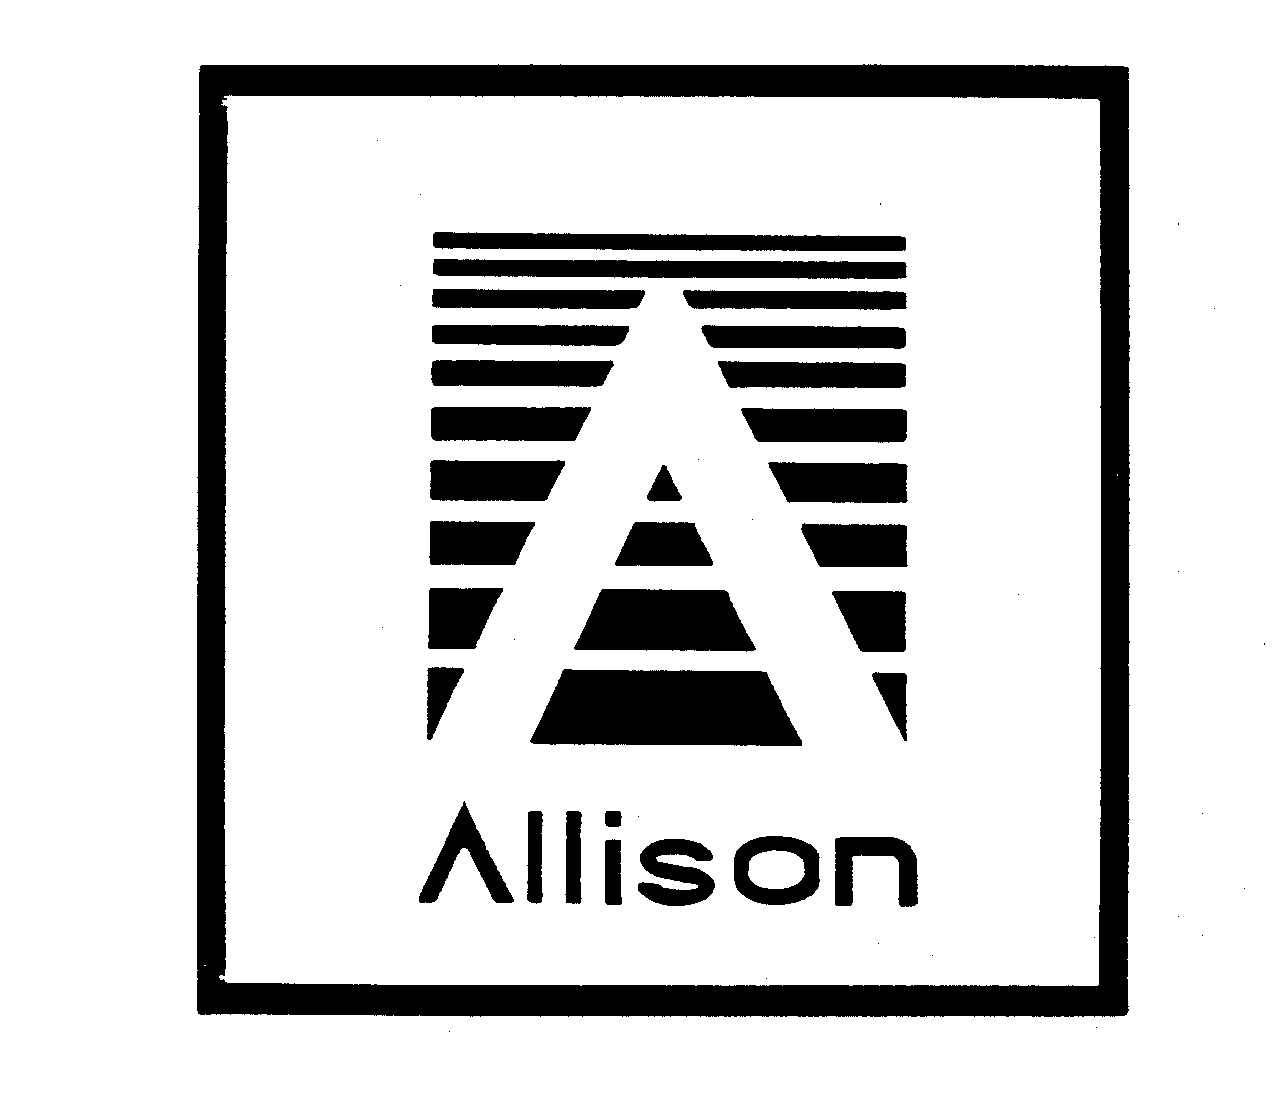  ALLISON A